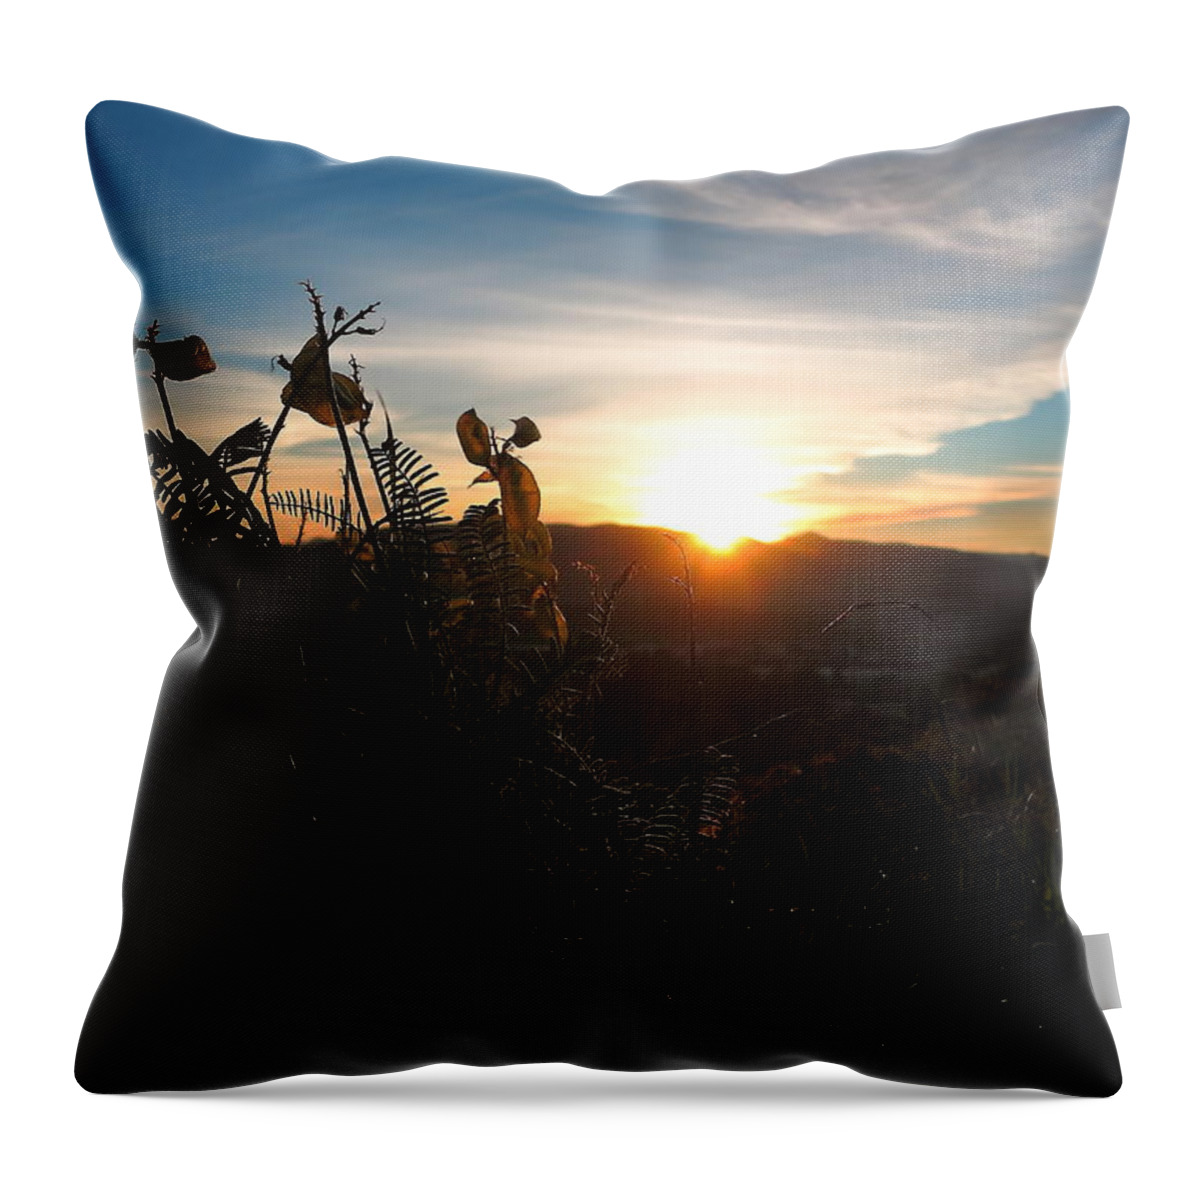 Seedpod Throw Pillow featuring the photograph Seedpods at Sundown by Paul Foutz